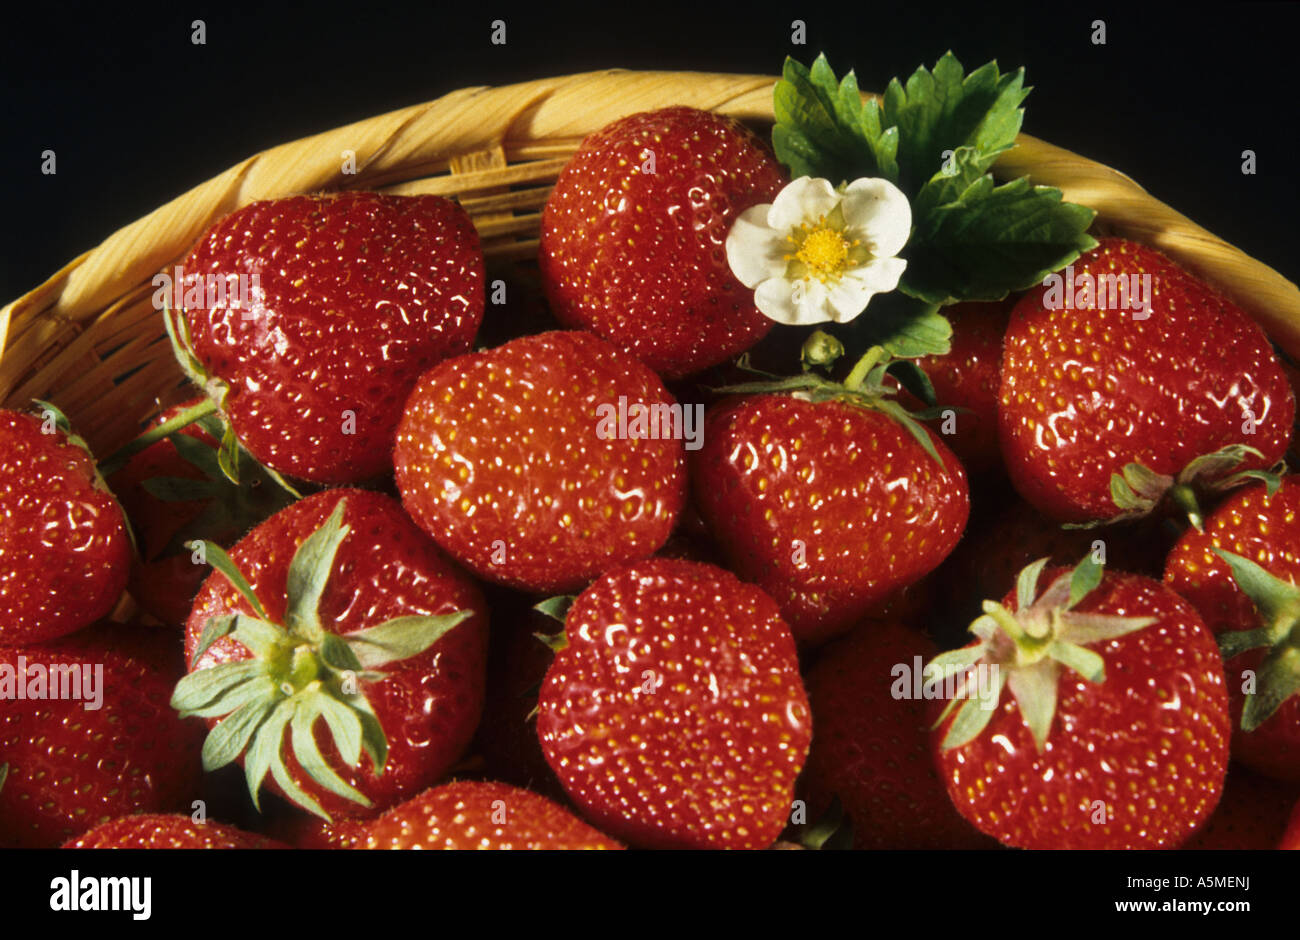 Erdbeere Strawberry Fragaria vesca fragola ERDBEERE Lebensmittel Nahrungsmittel Nahrung food generi alimentari alimentazione nut Stock Photo